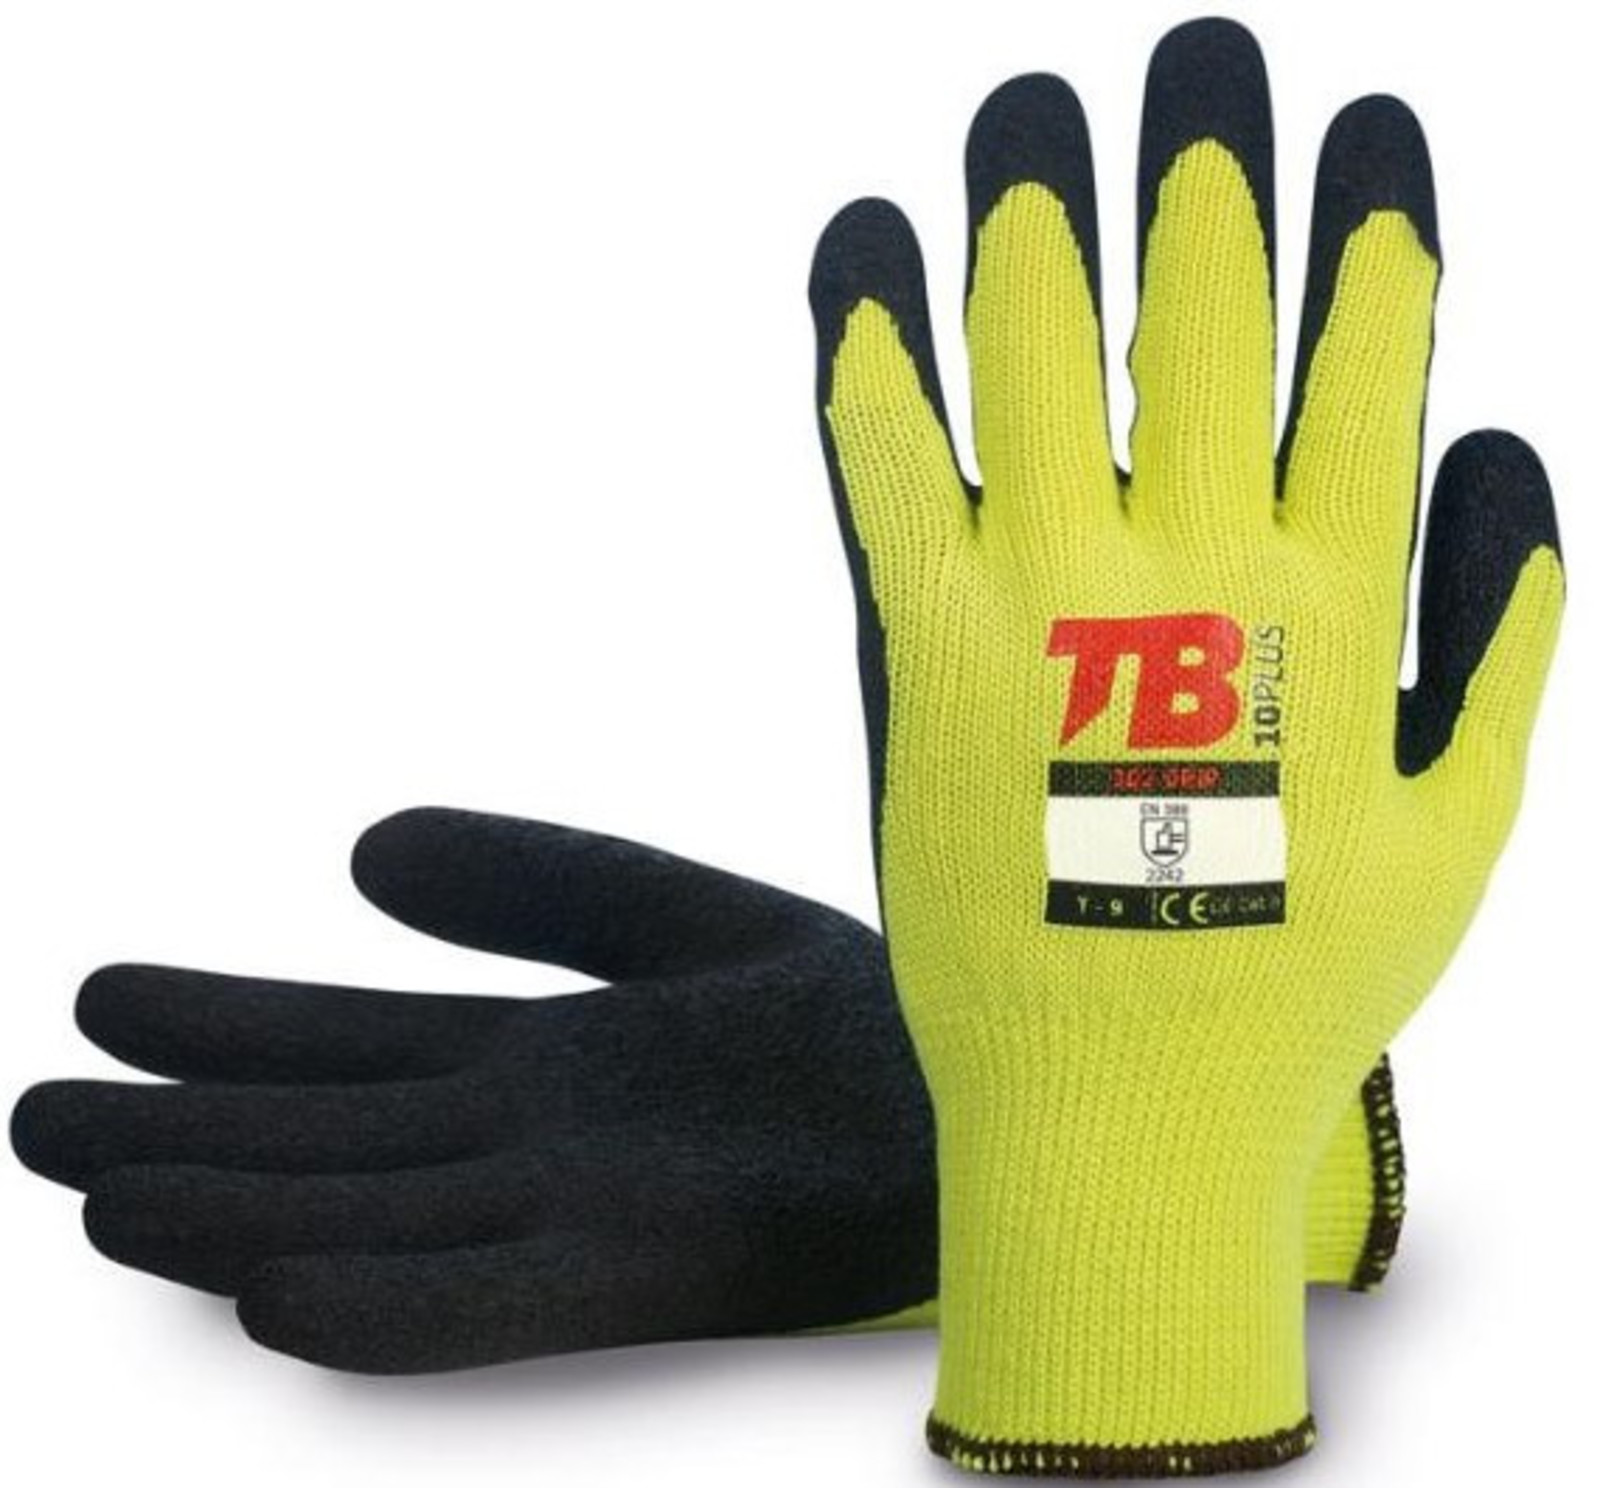 Pracovné rukavice TB 302 Grip - veľkosť: 9/L